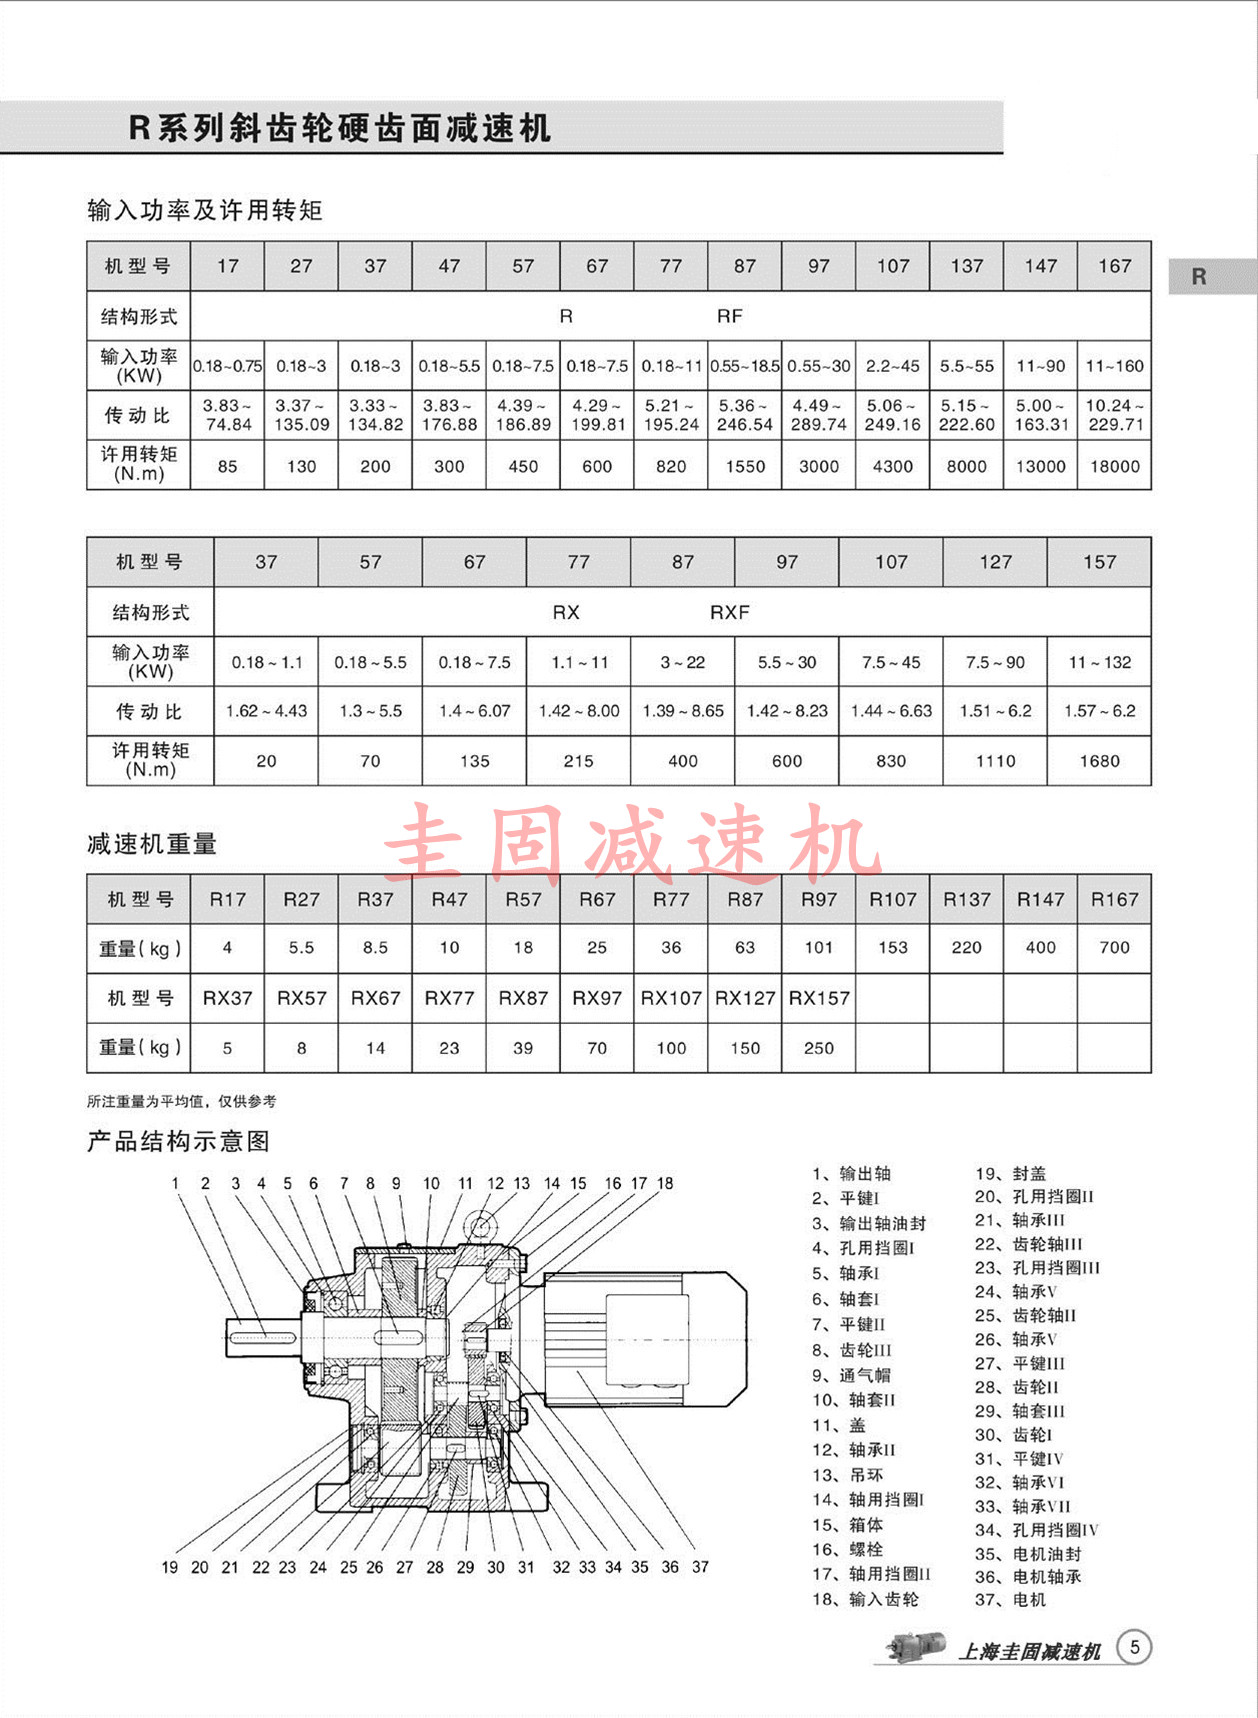 上海圭固R147减速机、R147齿轮减速机、R147减速机3D模型、R147减速机厂家直供 R147减速机,R147齿轮减速机,减速机R147,R147减速器,R147减速电机